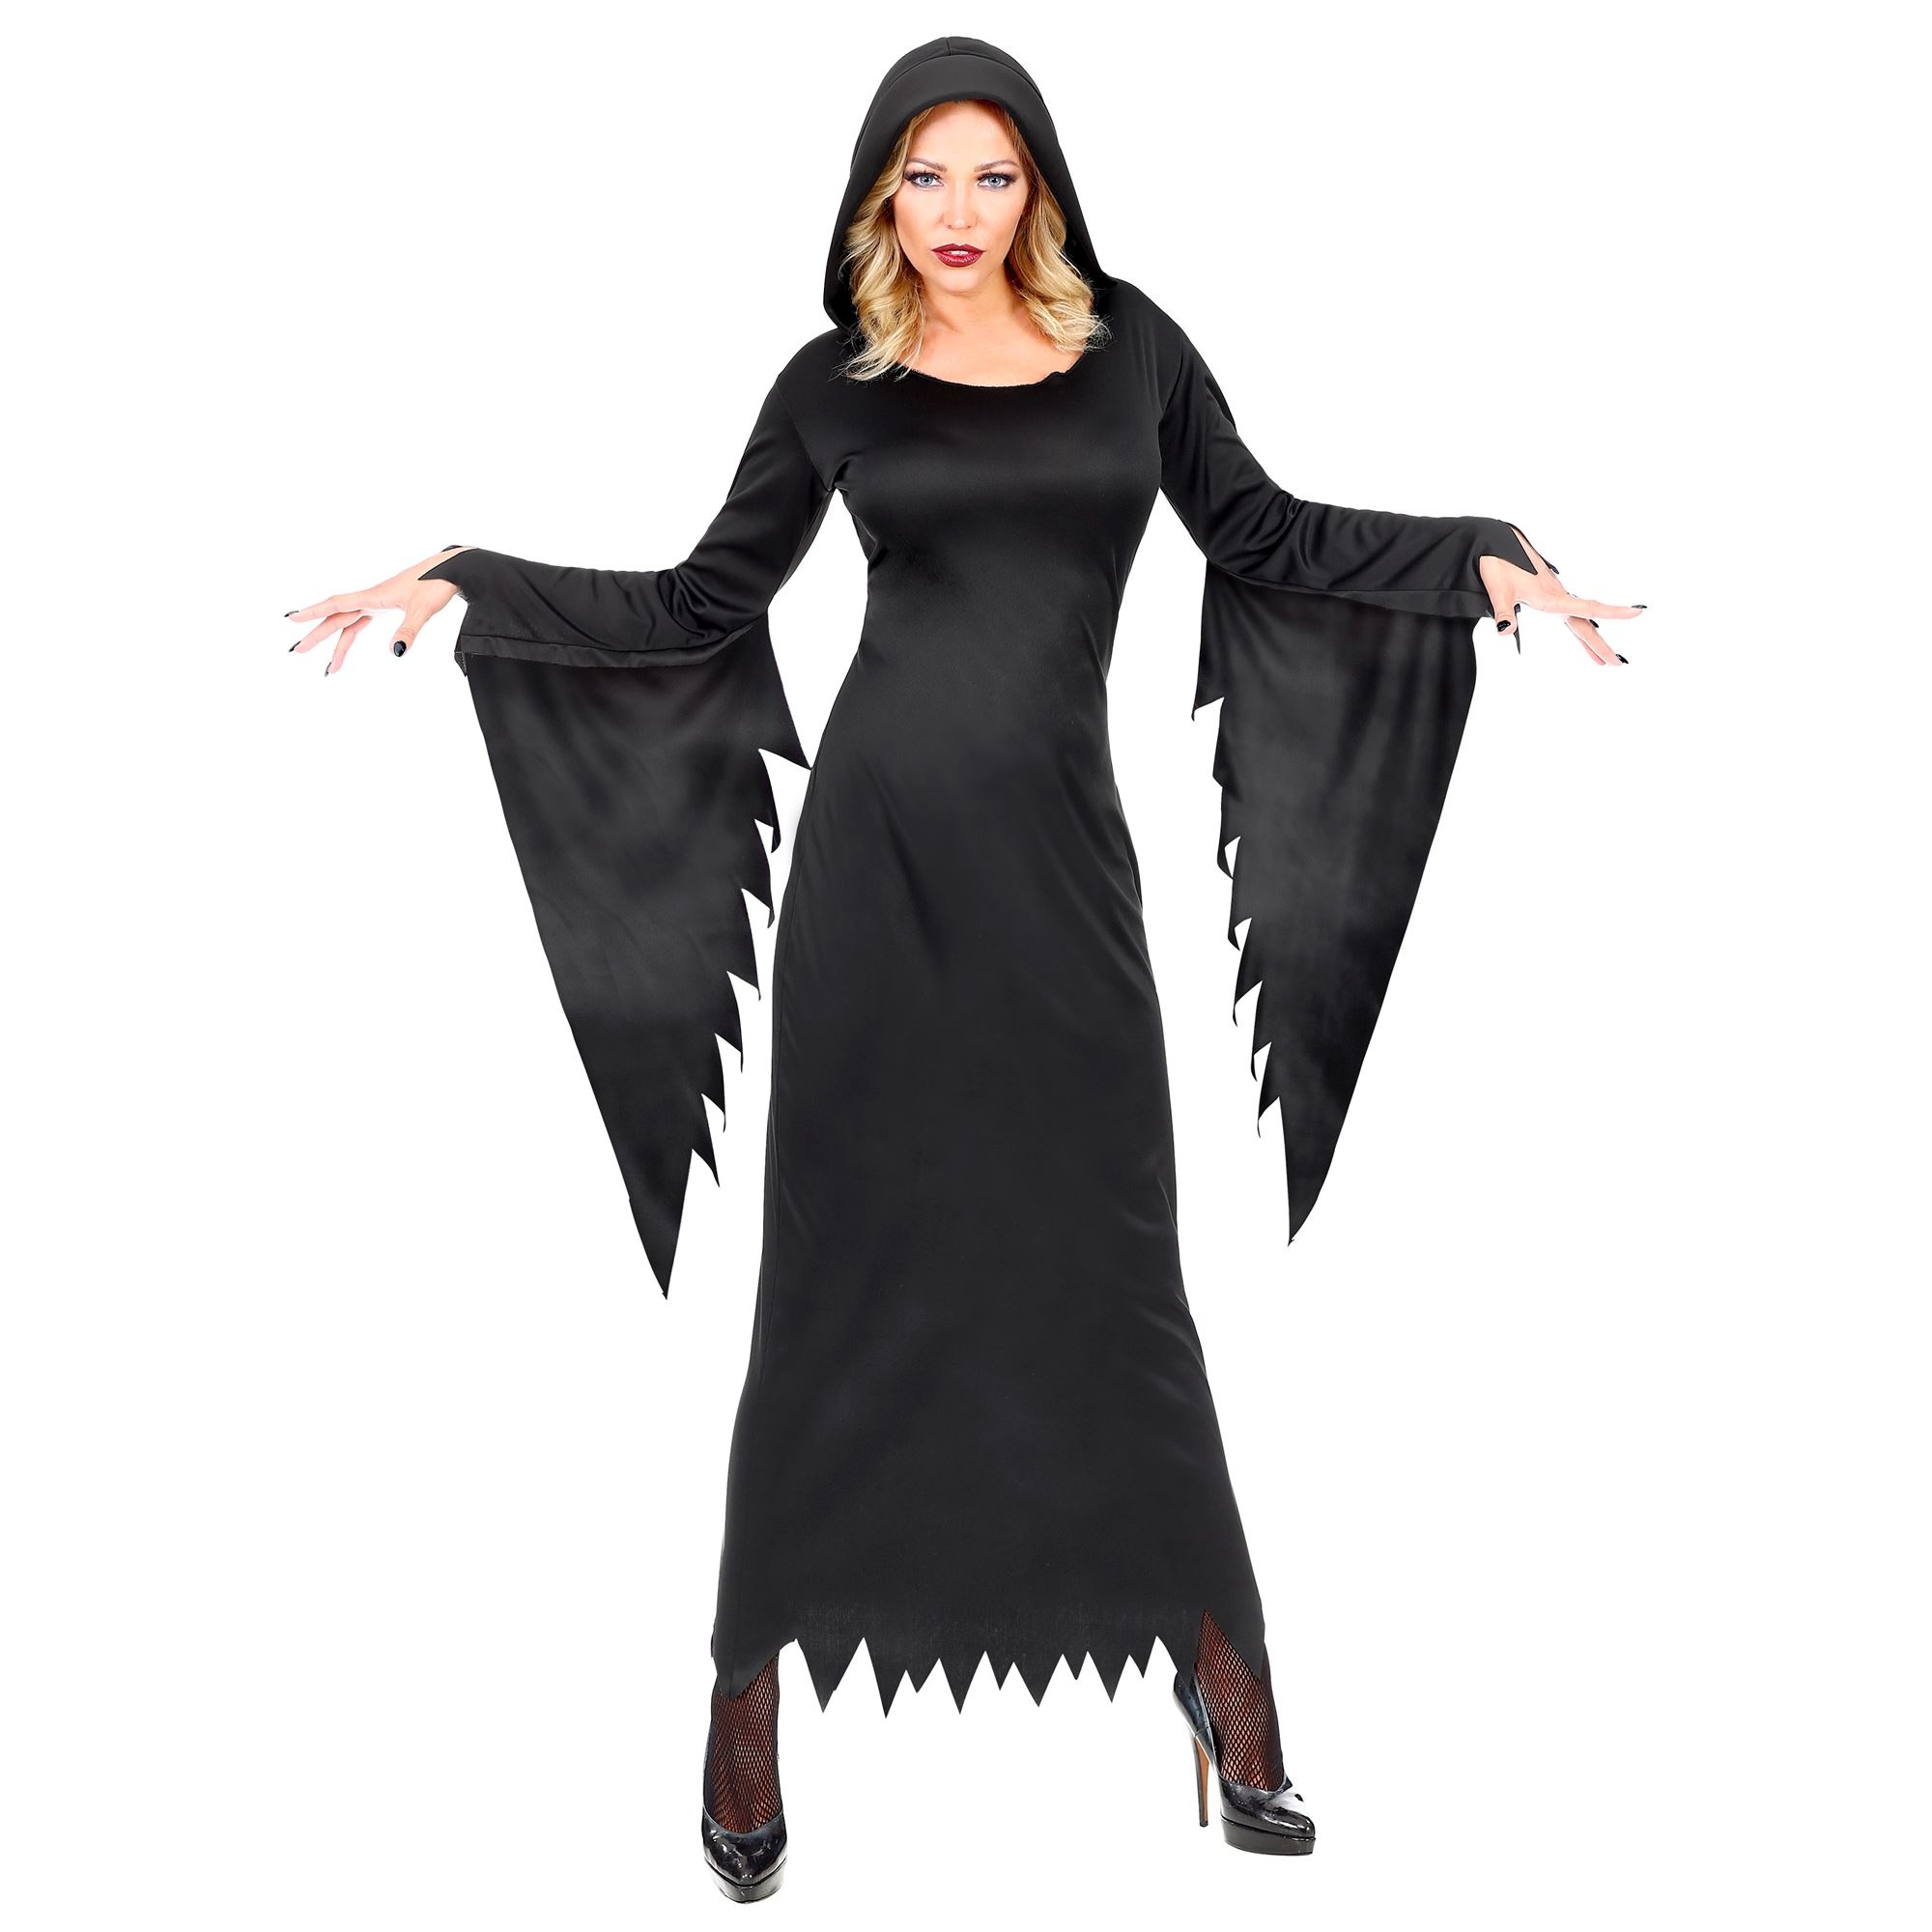 Widmann - Heks & Spider Lady & Voodoo & Duistere Religie Kostuum - Gotische Voodoo Koningin Duistere Zaken - Vrouw - zwart - Small - Halloween - Verkleedkleding